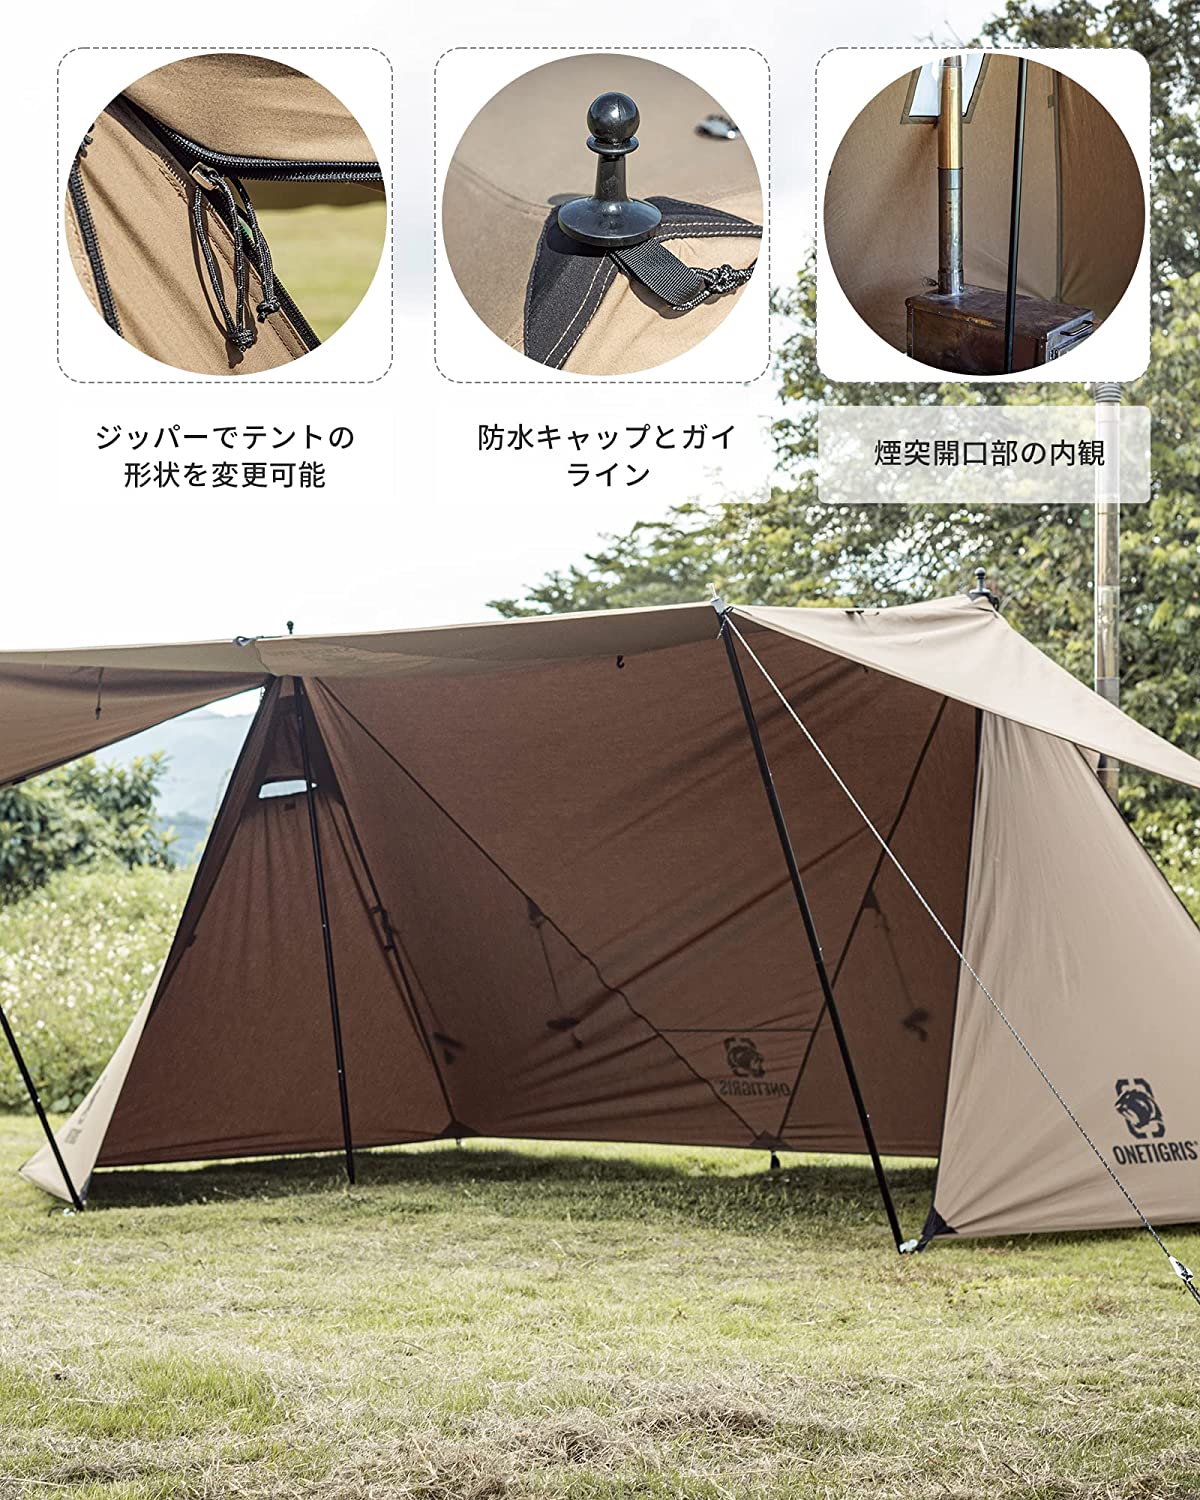 OneTigris ROC SHIELD-tent1